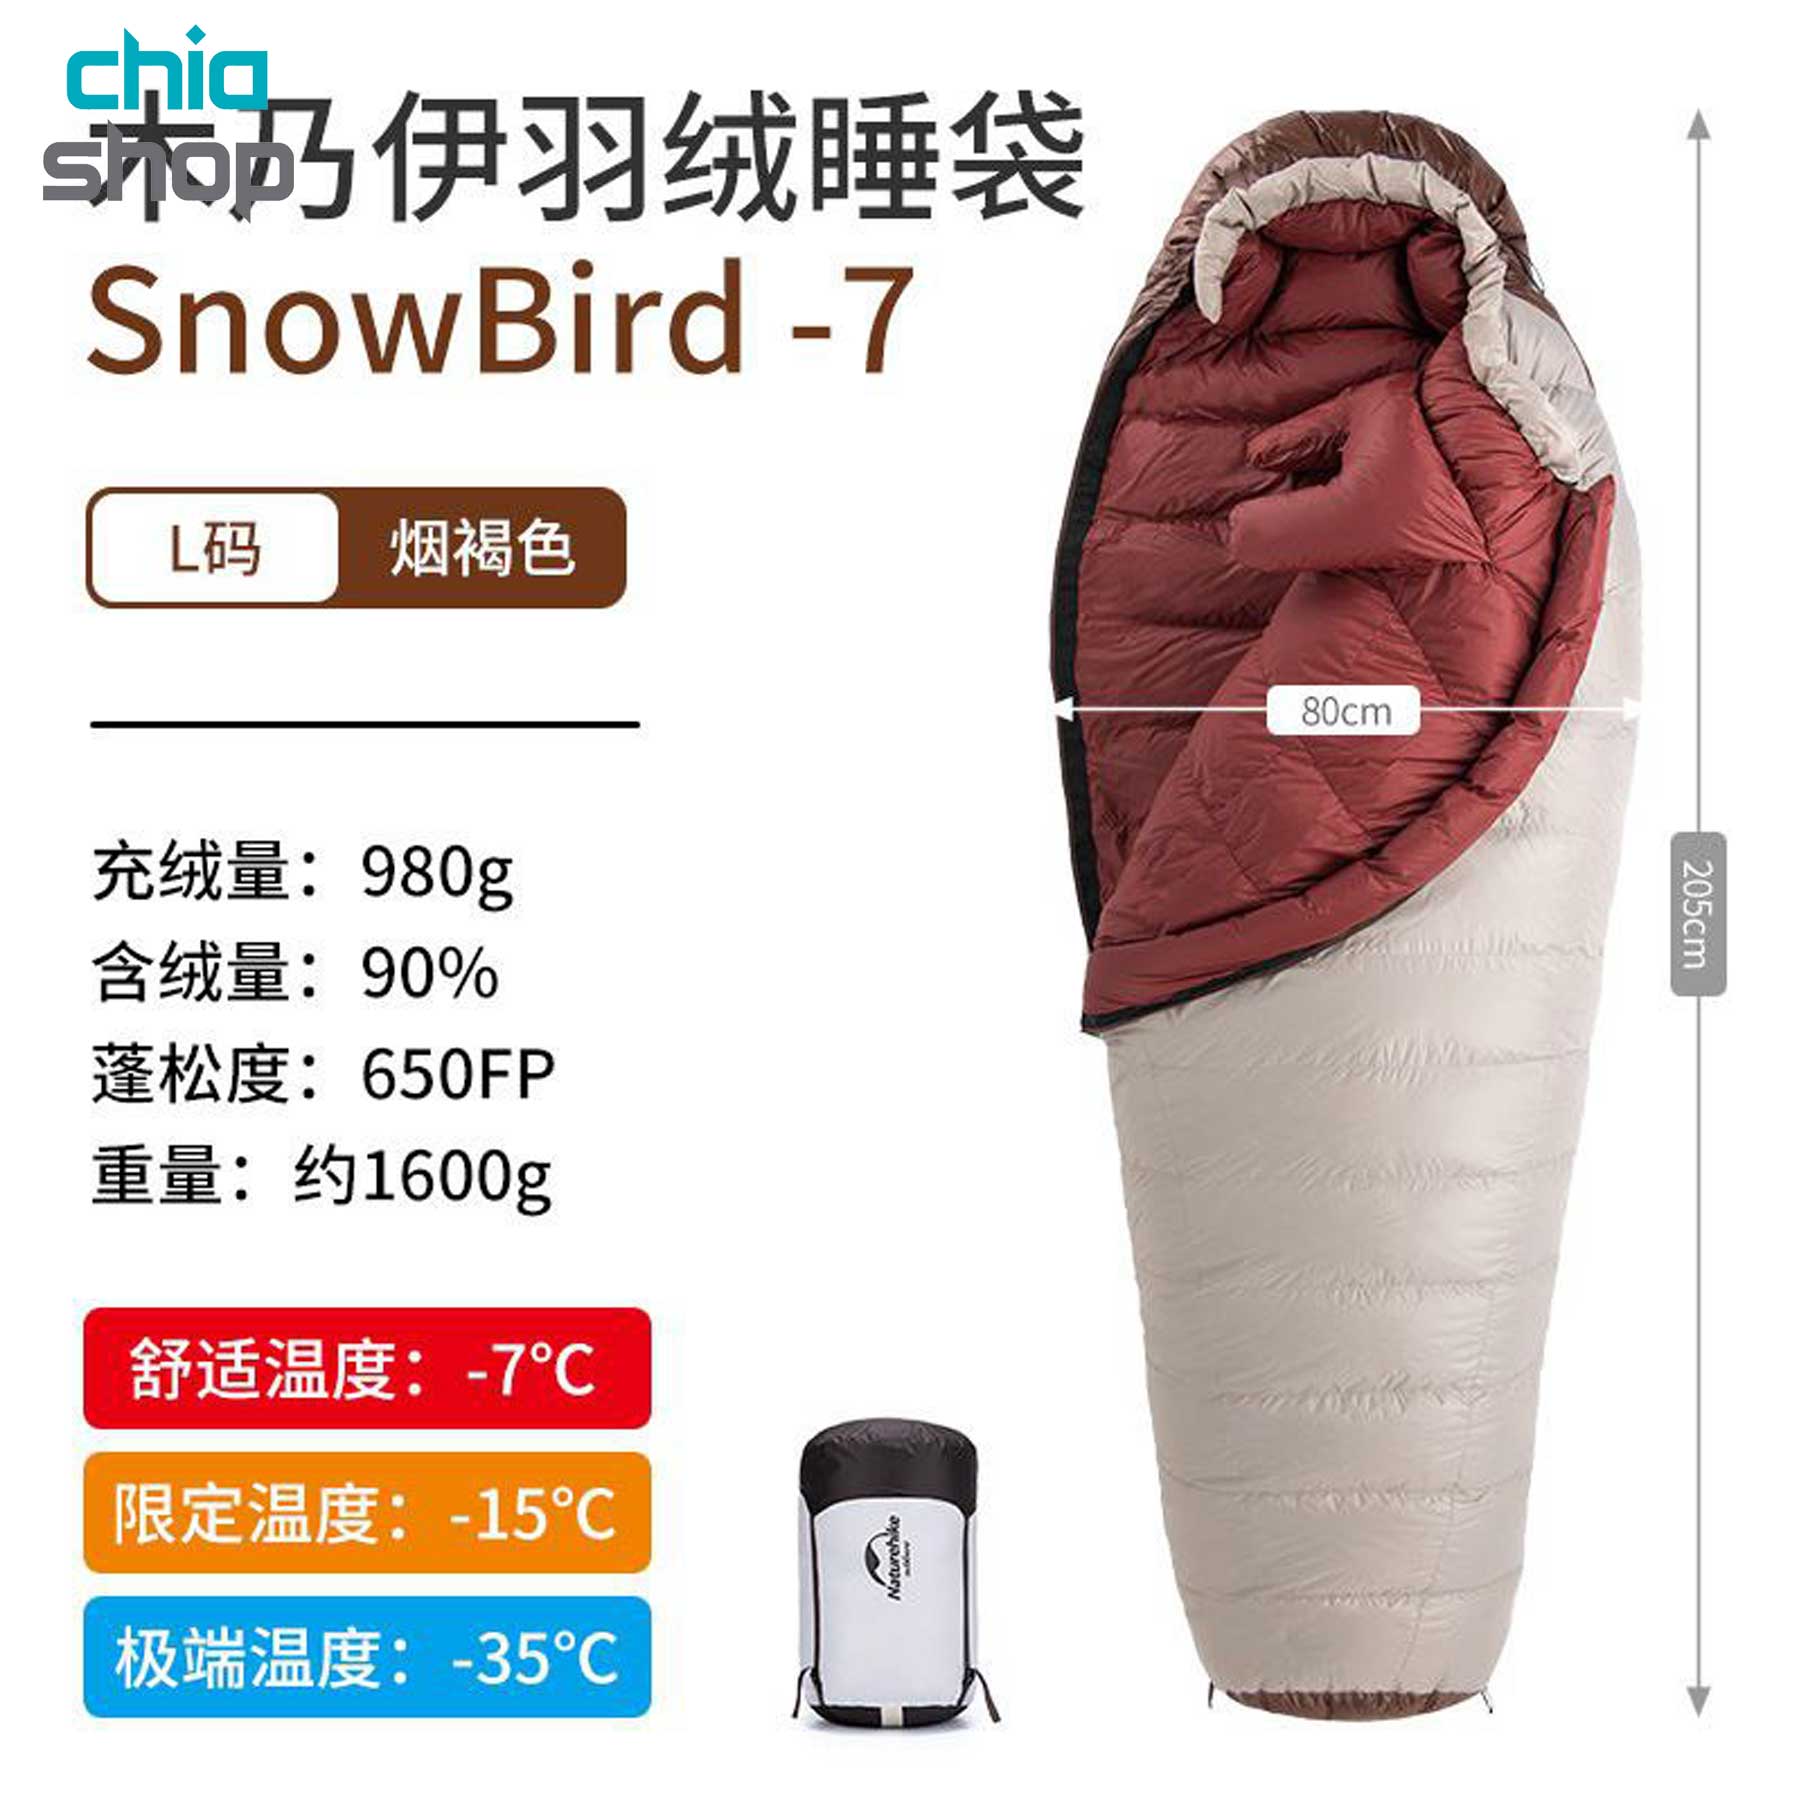 کیسه خواب پر نیچرهایک Snowbird